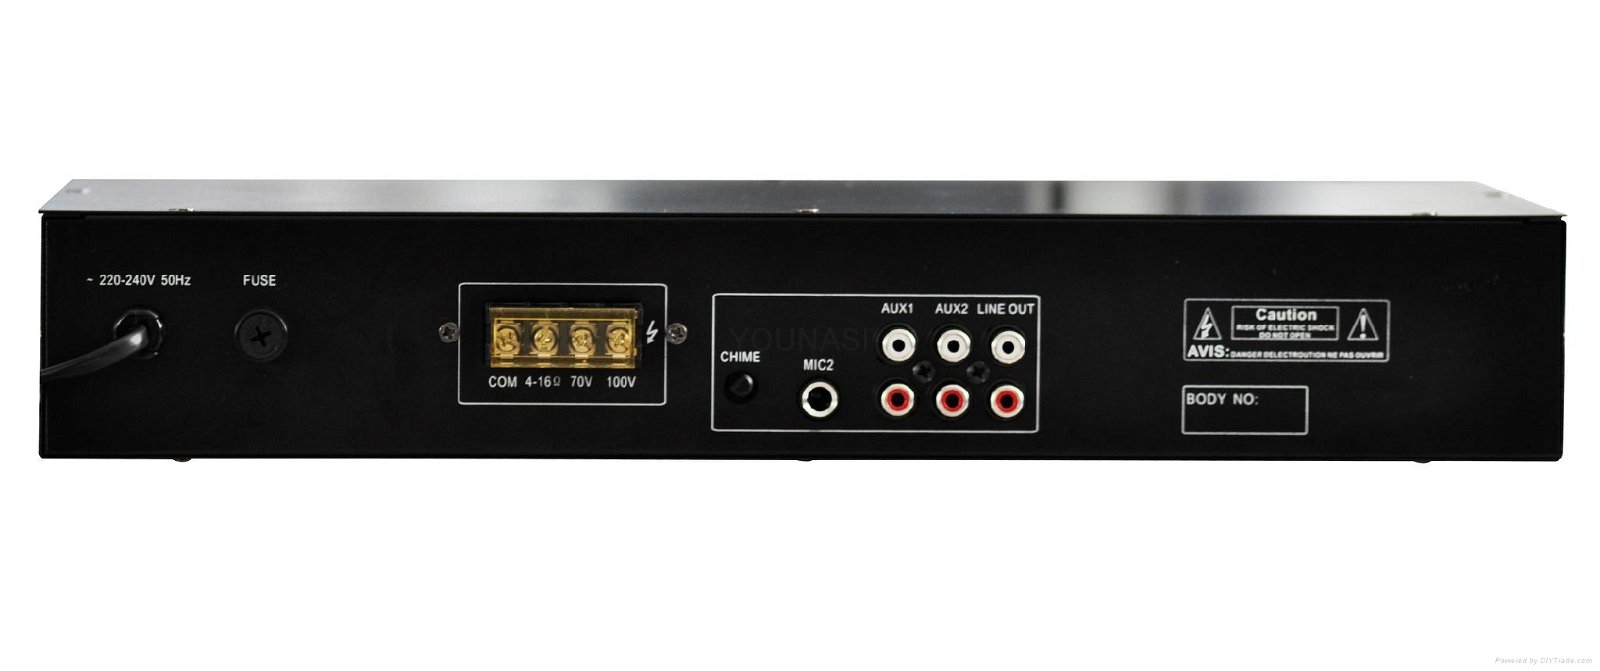 Mixer amplifier  with MP3 (Y-3060U) 2